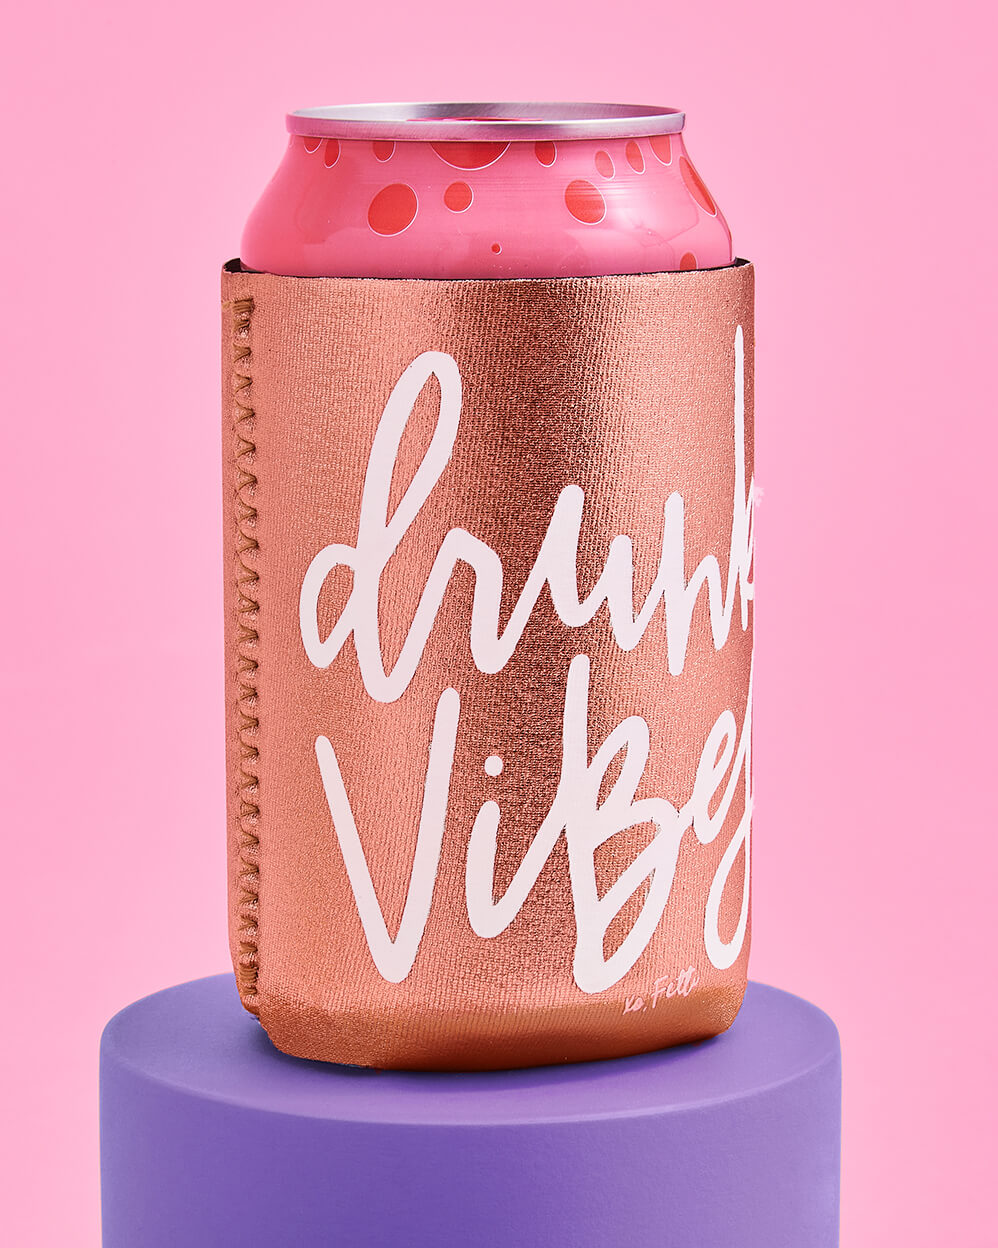 Vibe Check Huggies - 10 neoprene drink sleeves